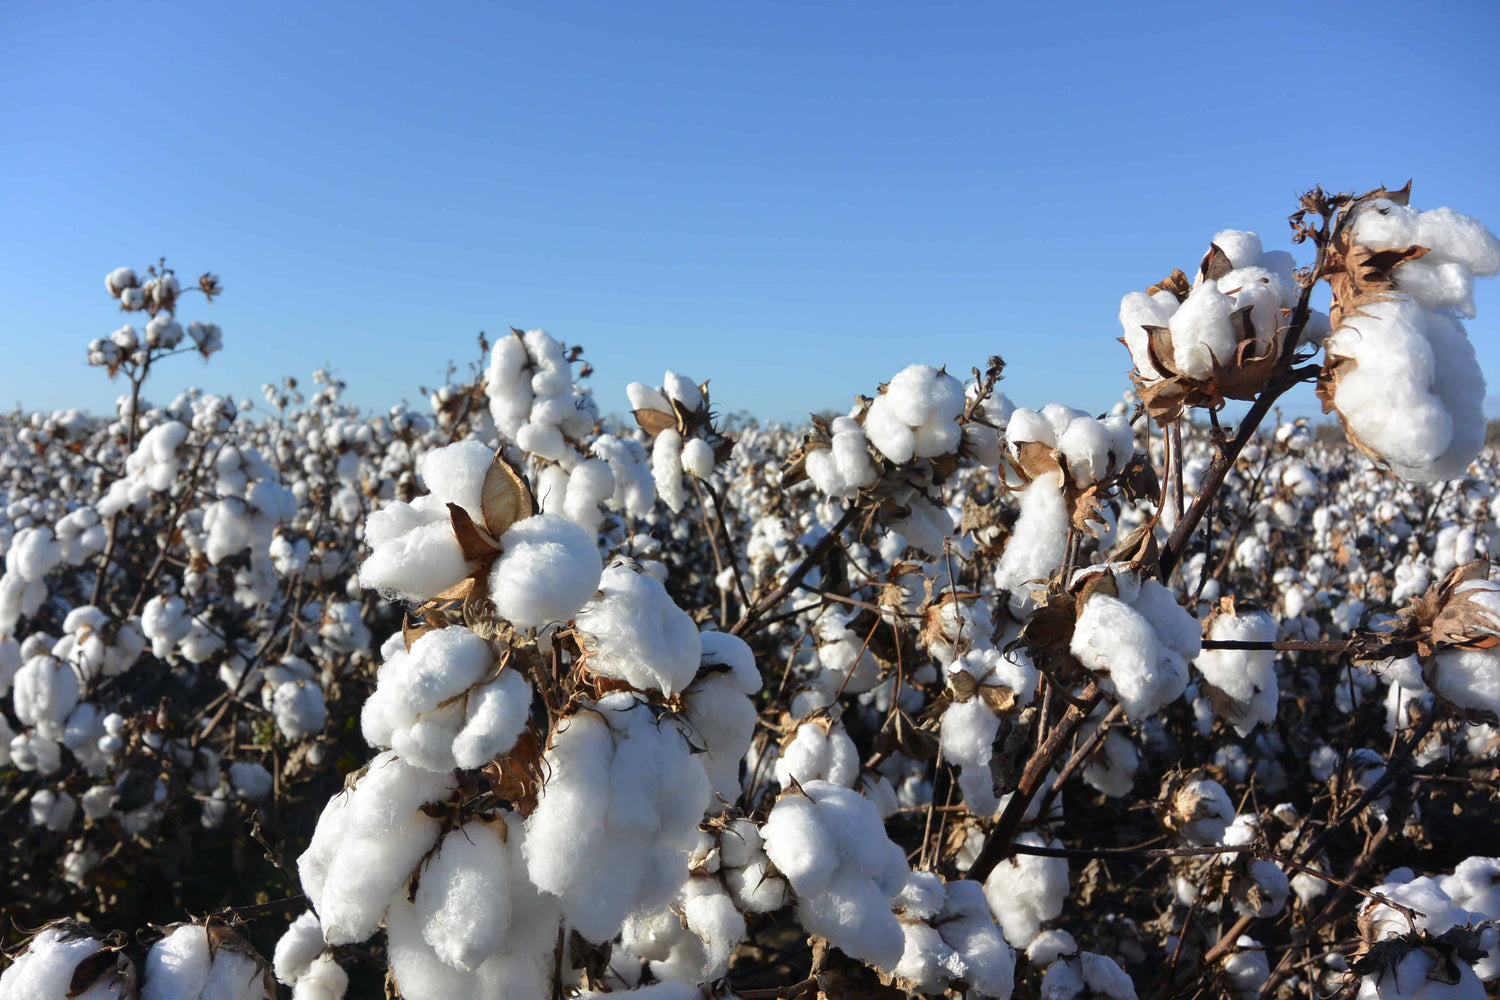 Australian cotton field - Yarn Road